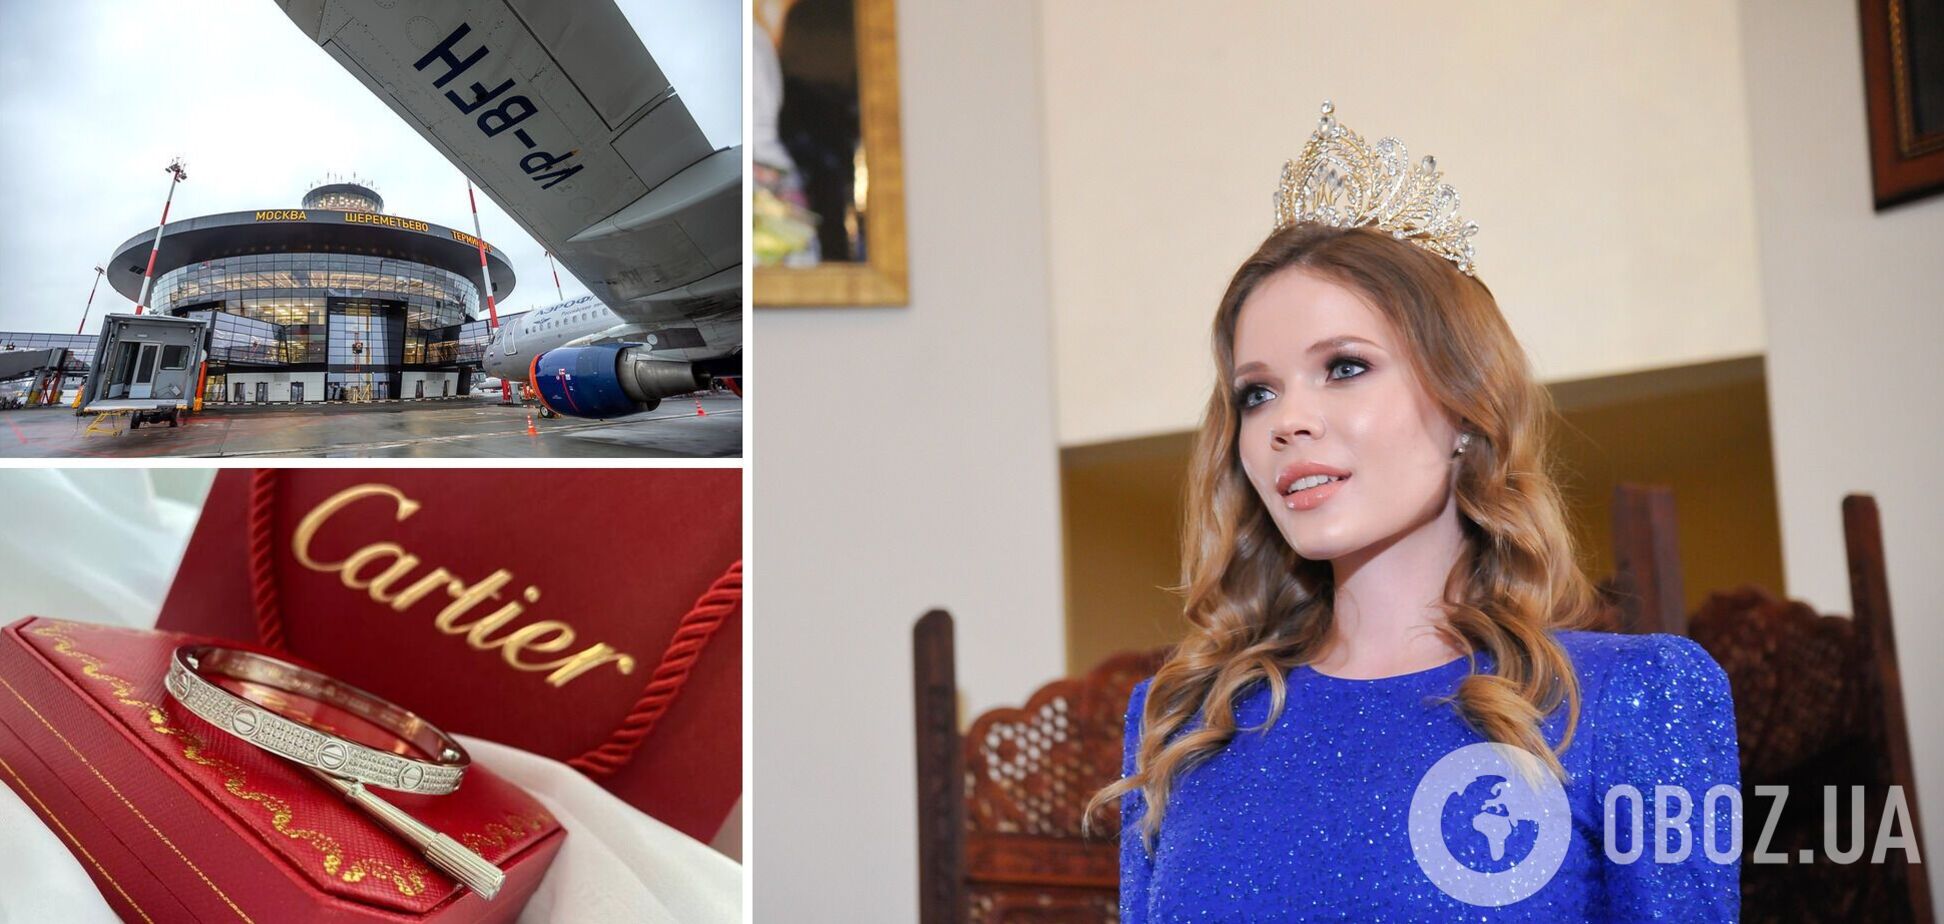 'Мисс Москва' задержали в аэропорту Шереметьево с контрабандой на 20 тисяч евро: она пыталась откупиться